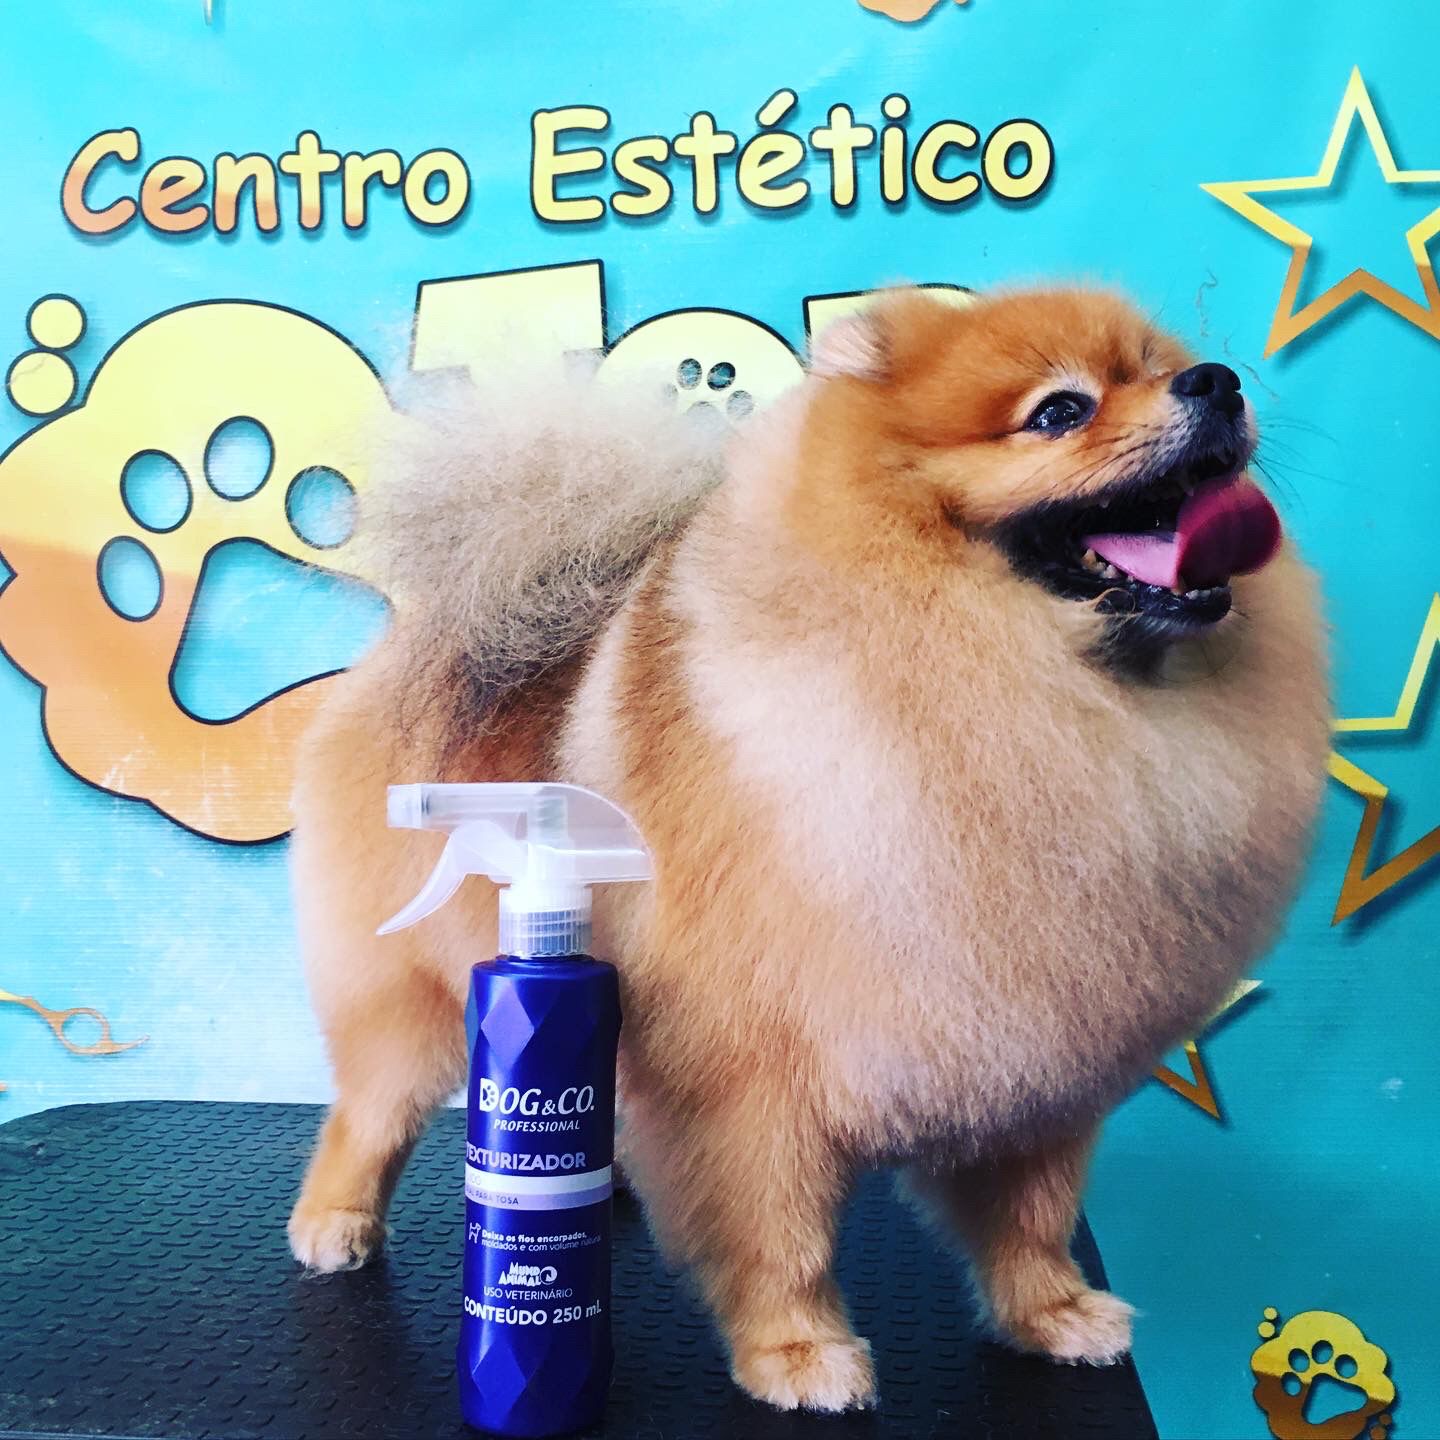 Pet Shop de Cachorro Banho e Tosa Preço Itaquaquecetuba - Pet Shop